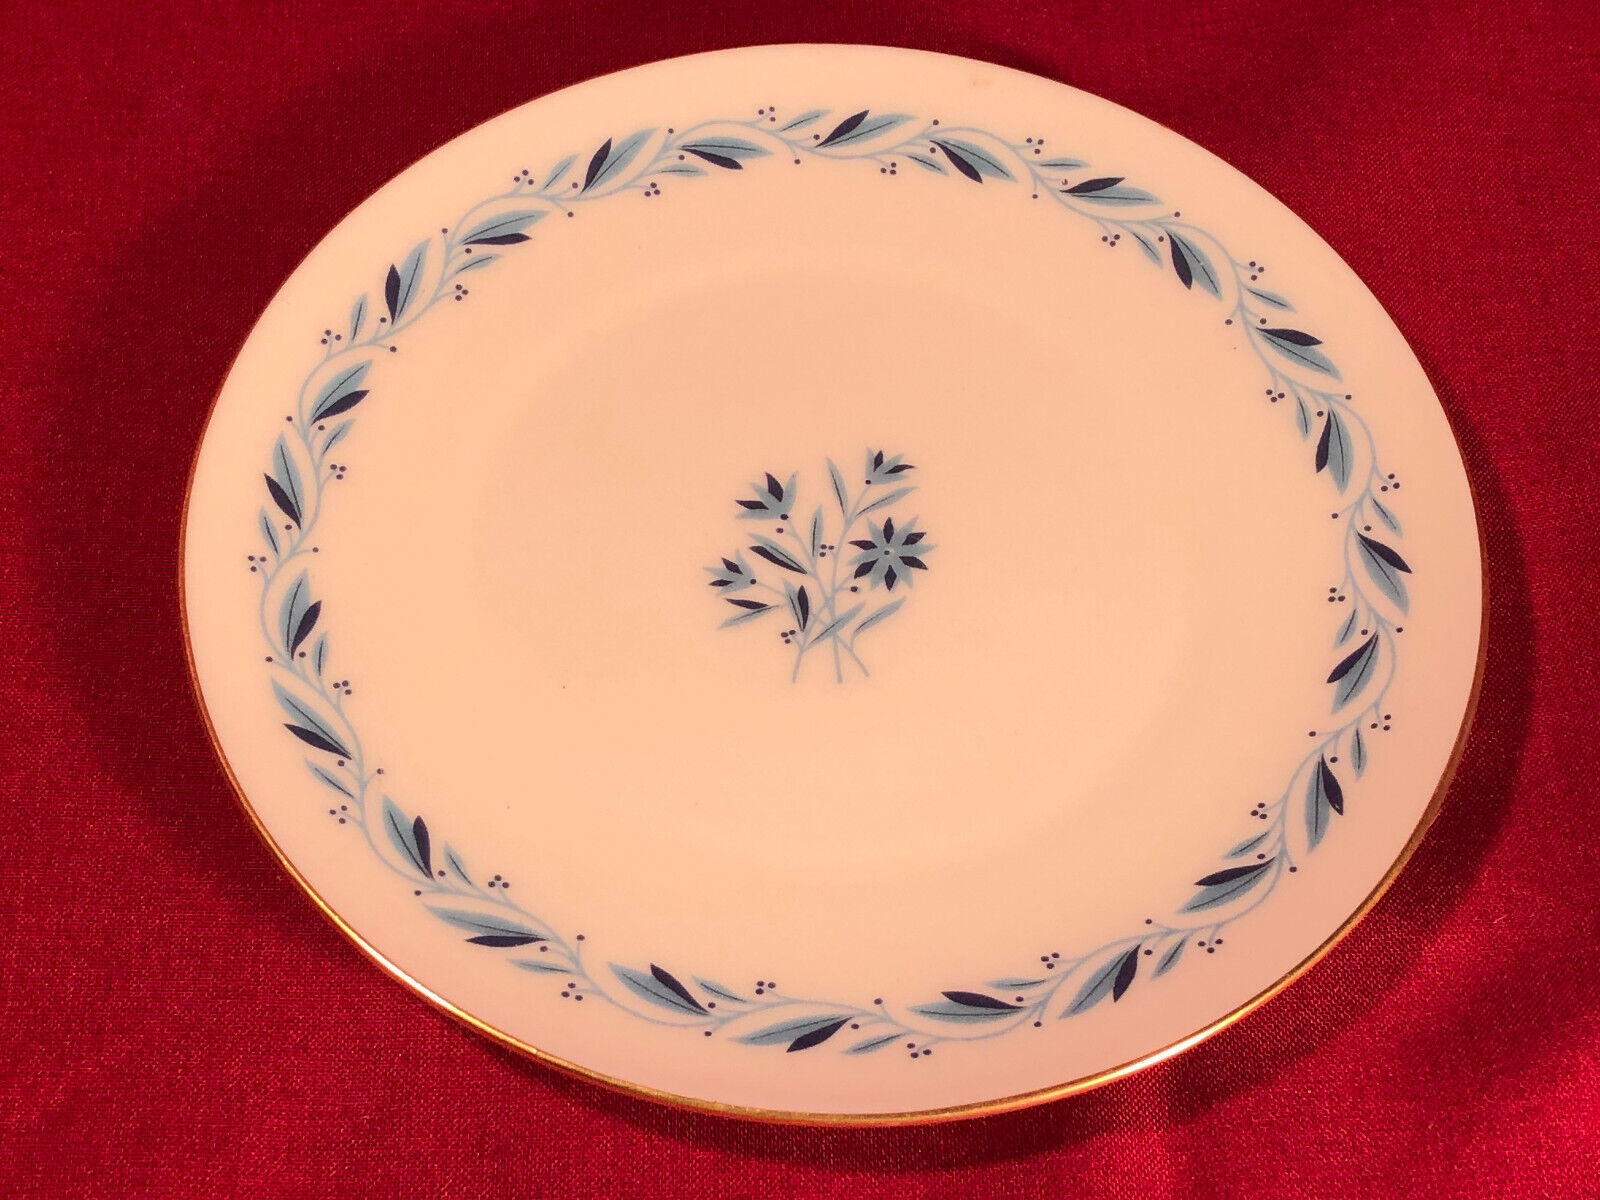 Primary image for Lenox Blueridge Blue Mark Dessert Plate 7 Inch